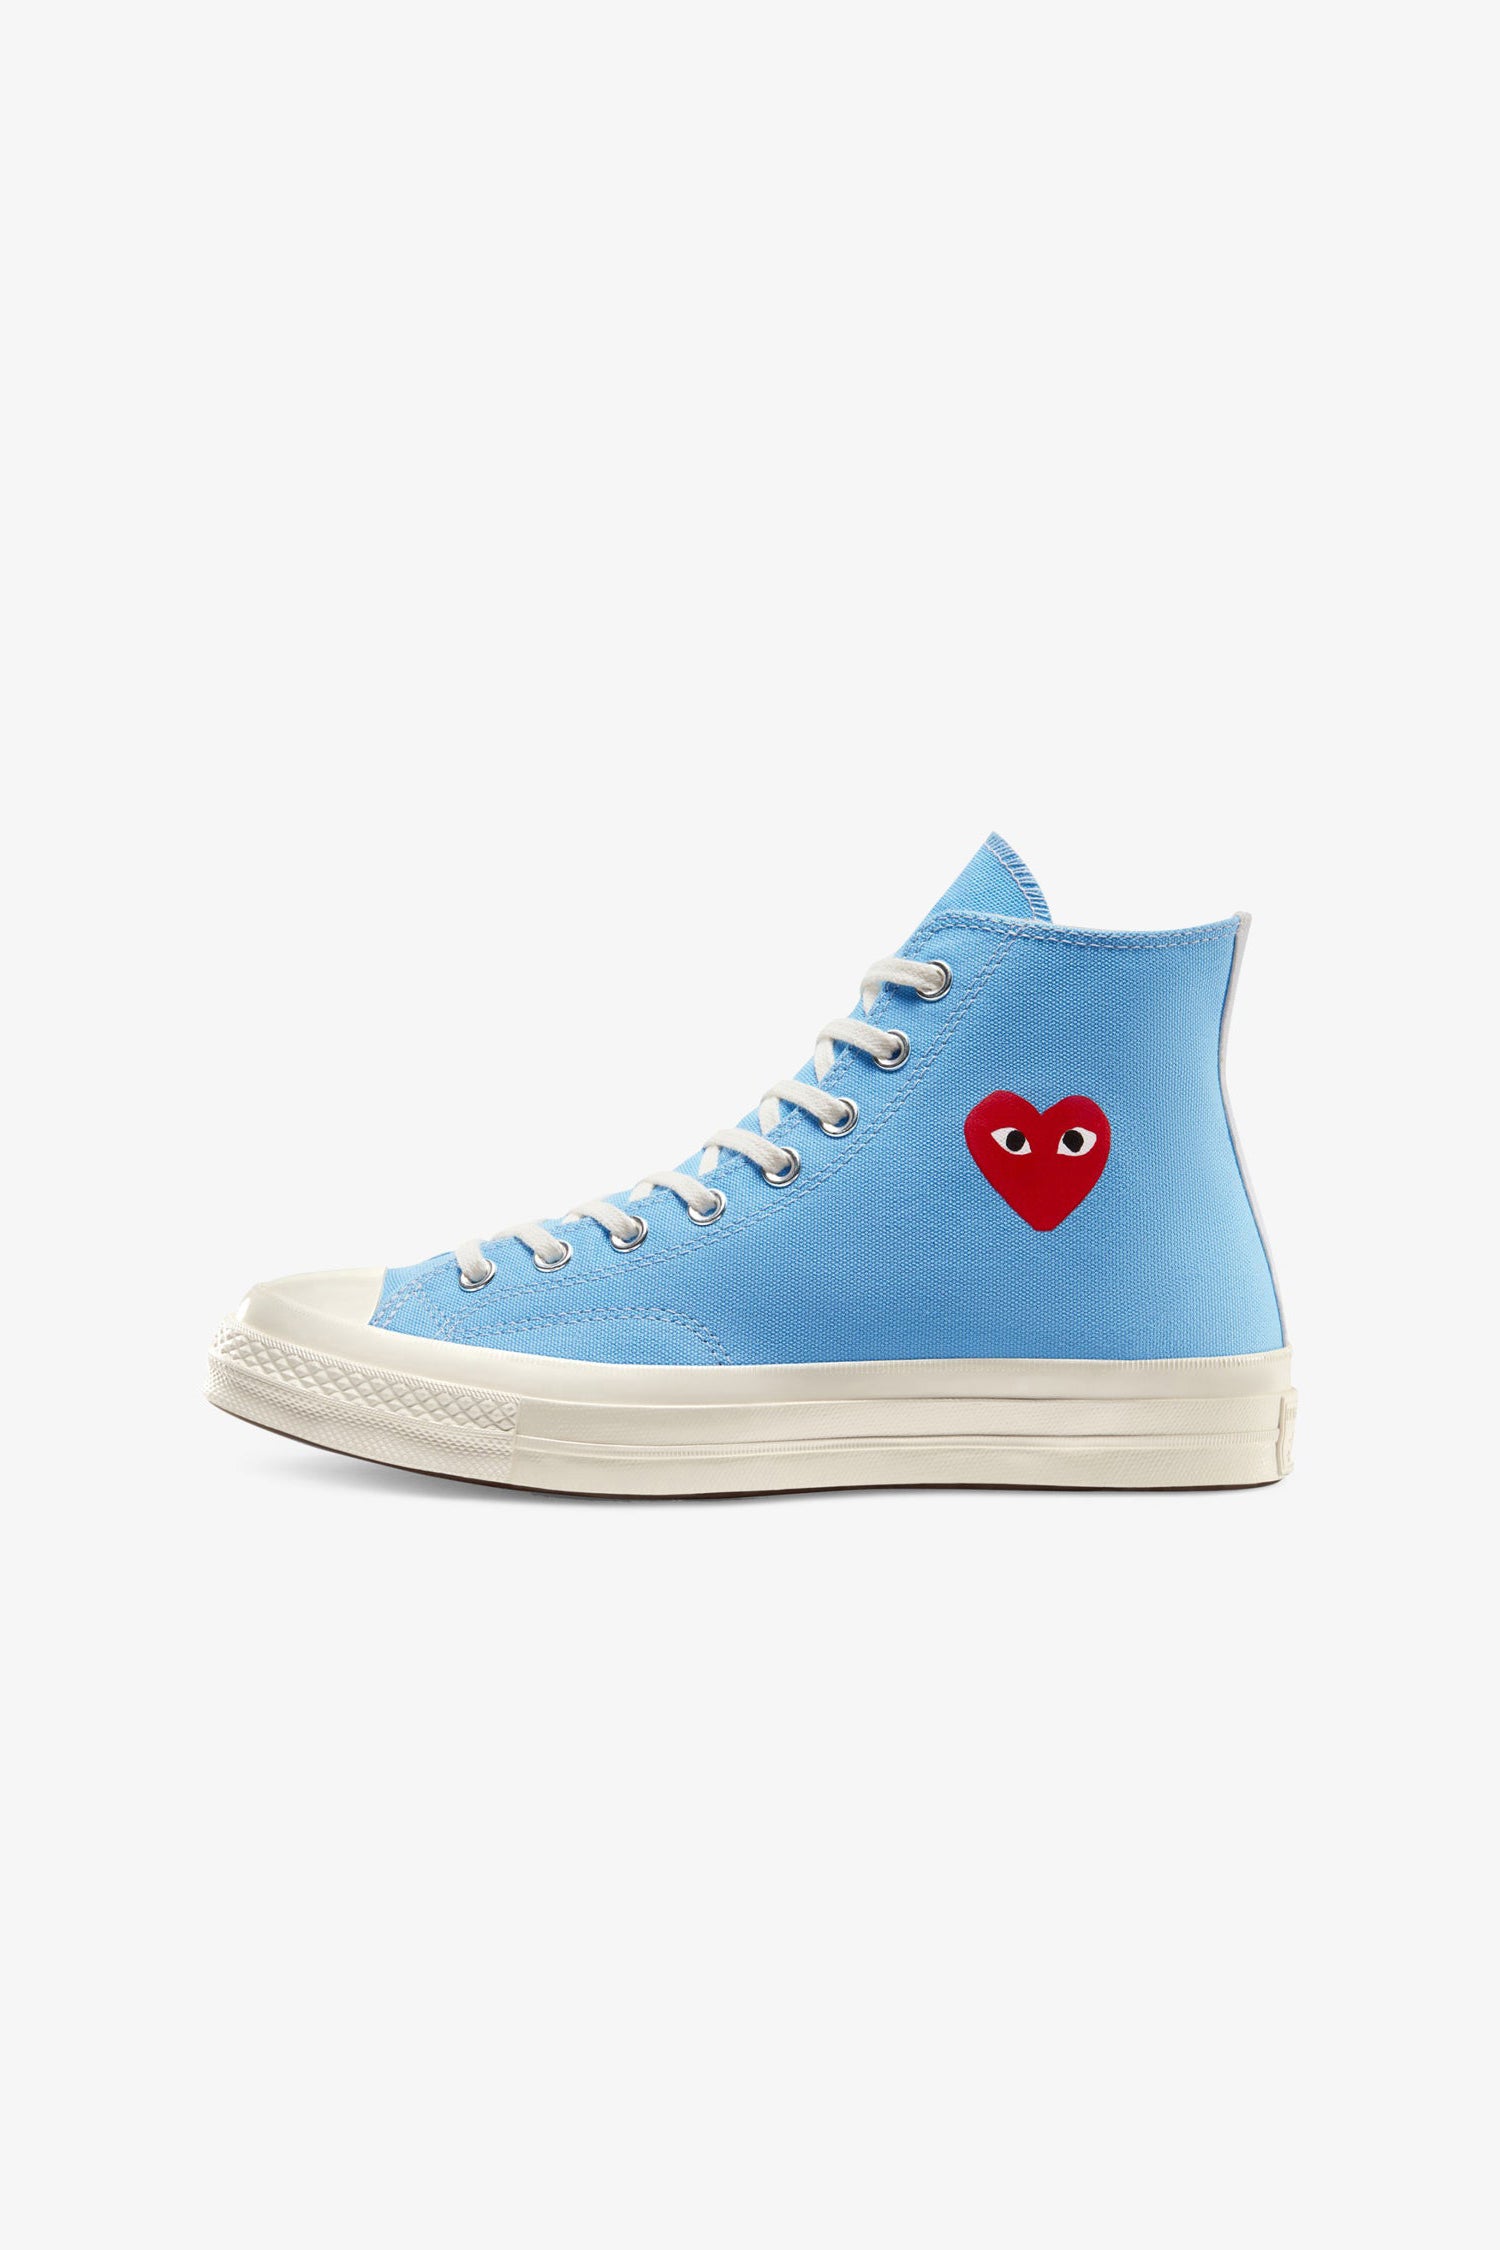 Selectshop FRAME - COMME DES GARCONS PLAY Comme des Garçons x Converse Chuck '70 High (Bright Blue) Footwear Dubai